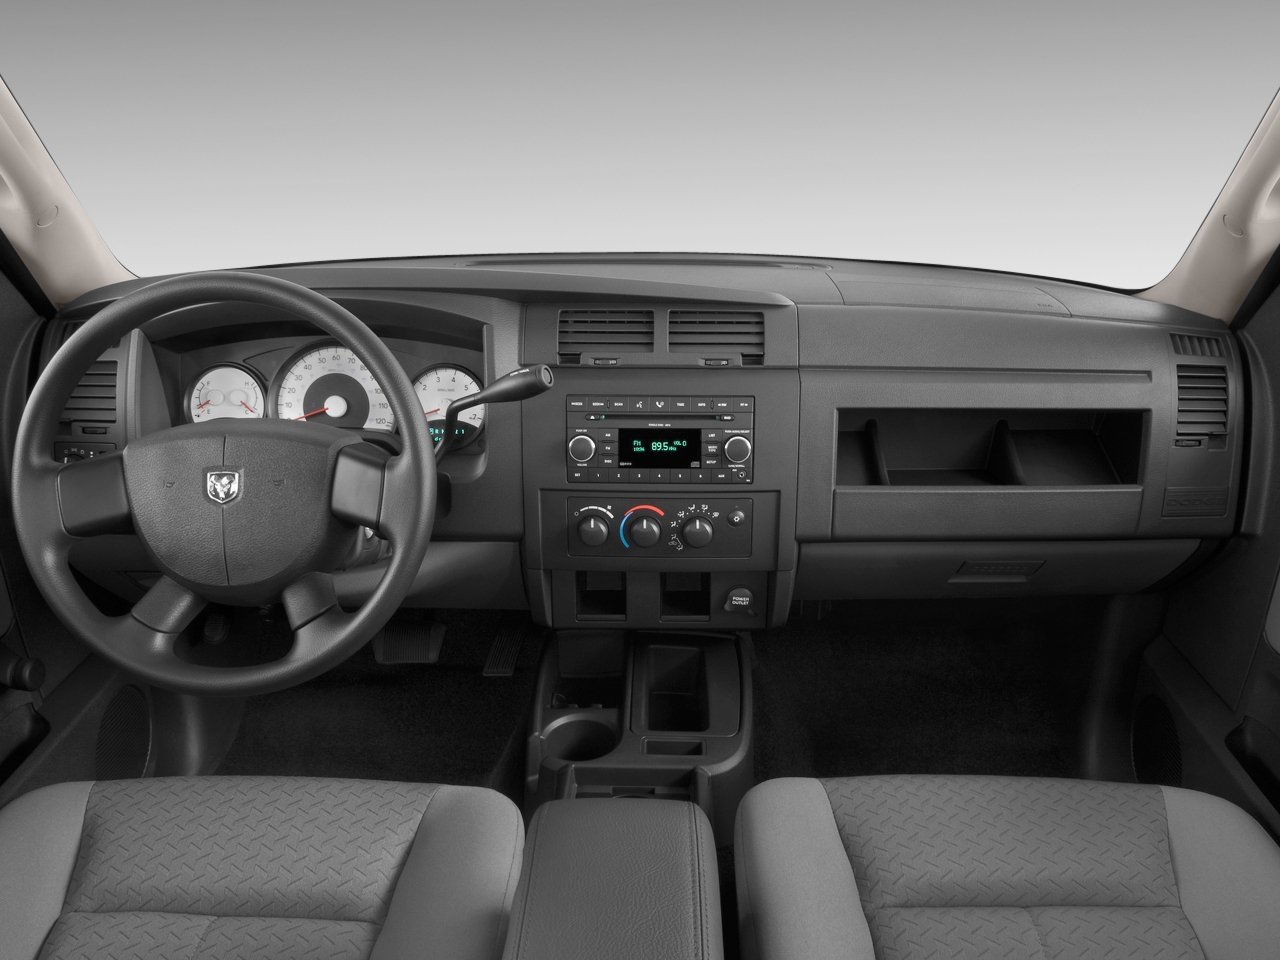 пикап 2 дв. Extended Cab Dodge Dakota 2007 - 2011г выпуска модификация 3.7 MT (210 л.с.)